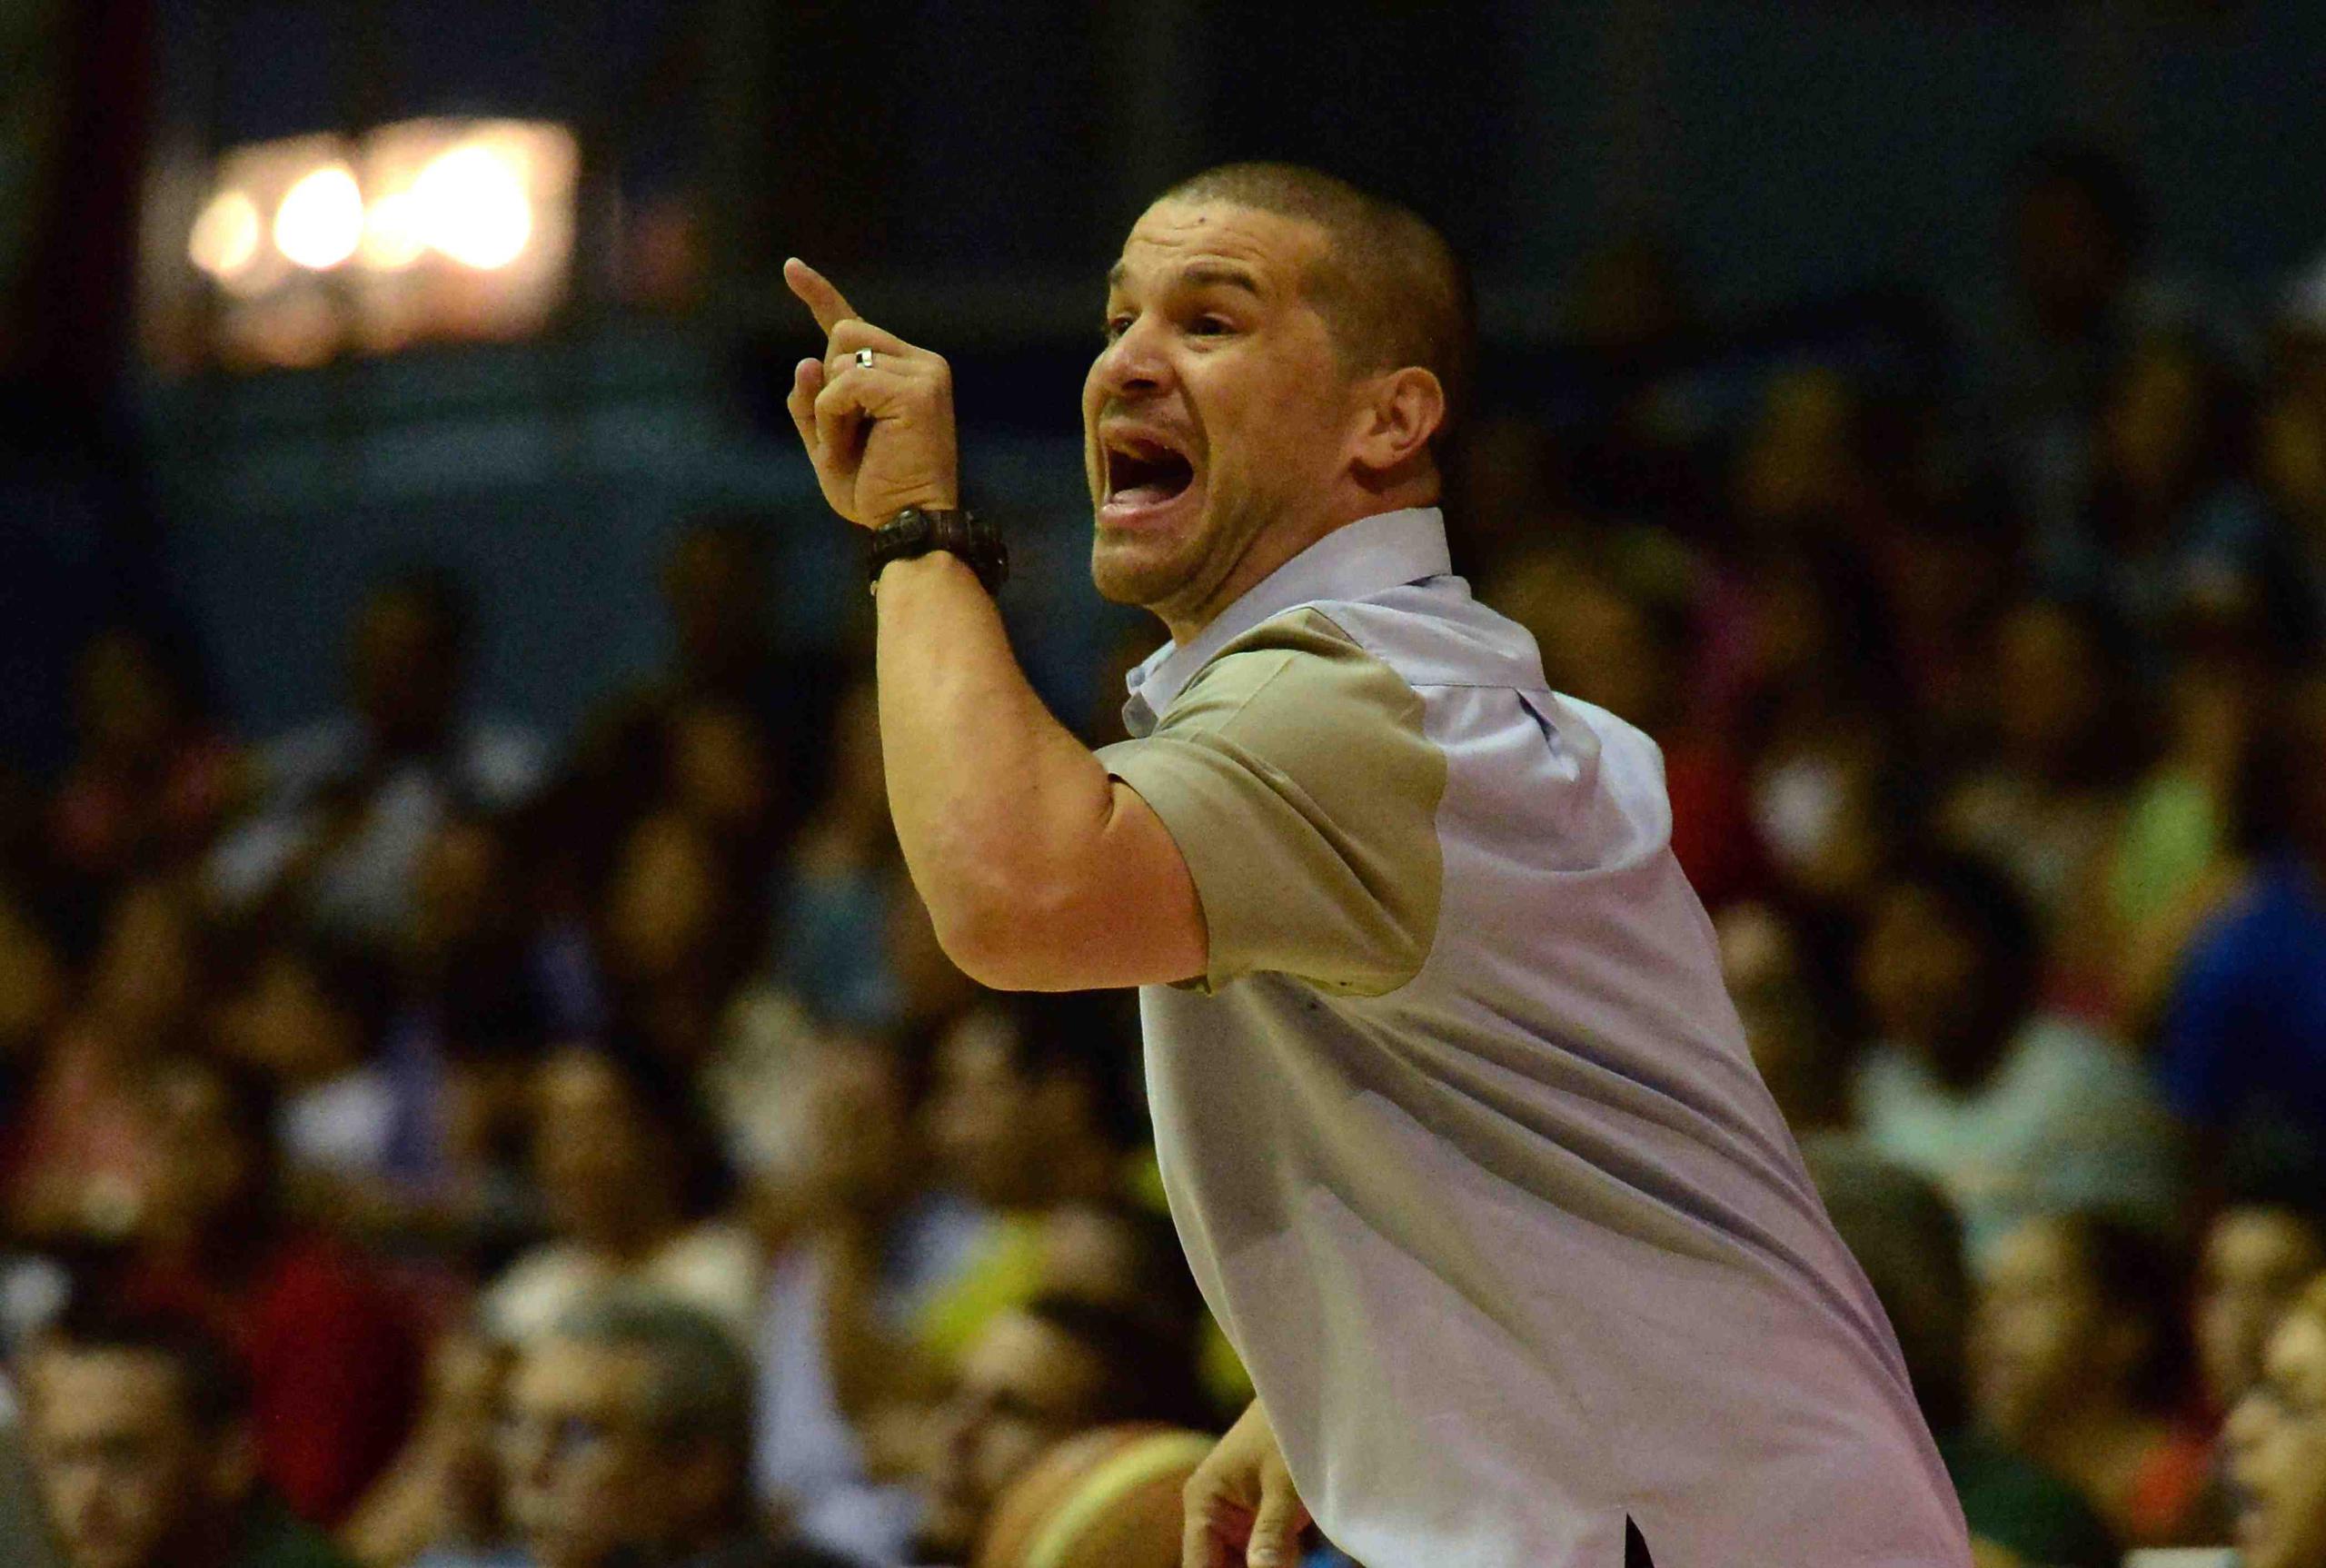 El técnico Juan Cardona tuvo marca de 4-7 al mando de los Atenienses. (GFR Media)